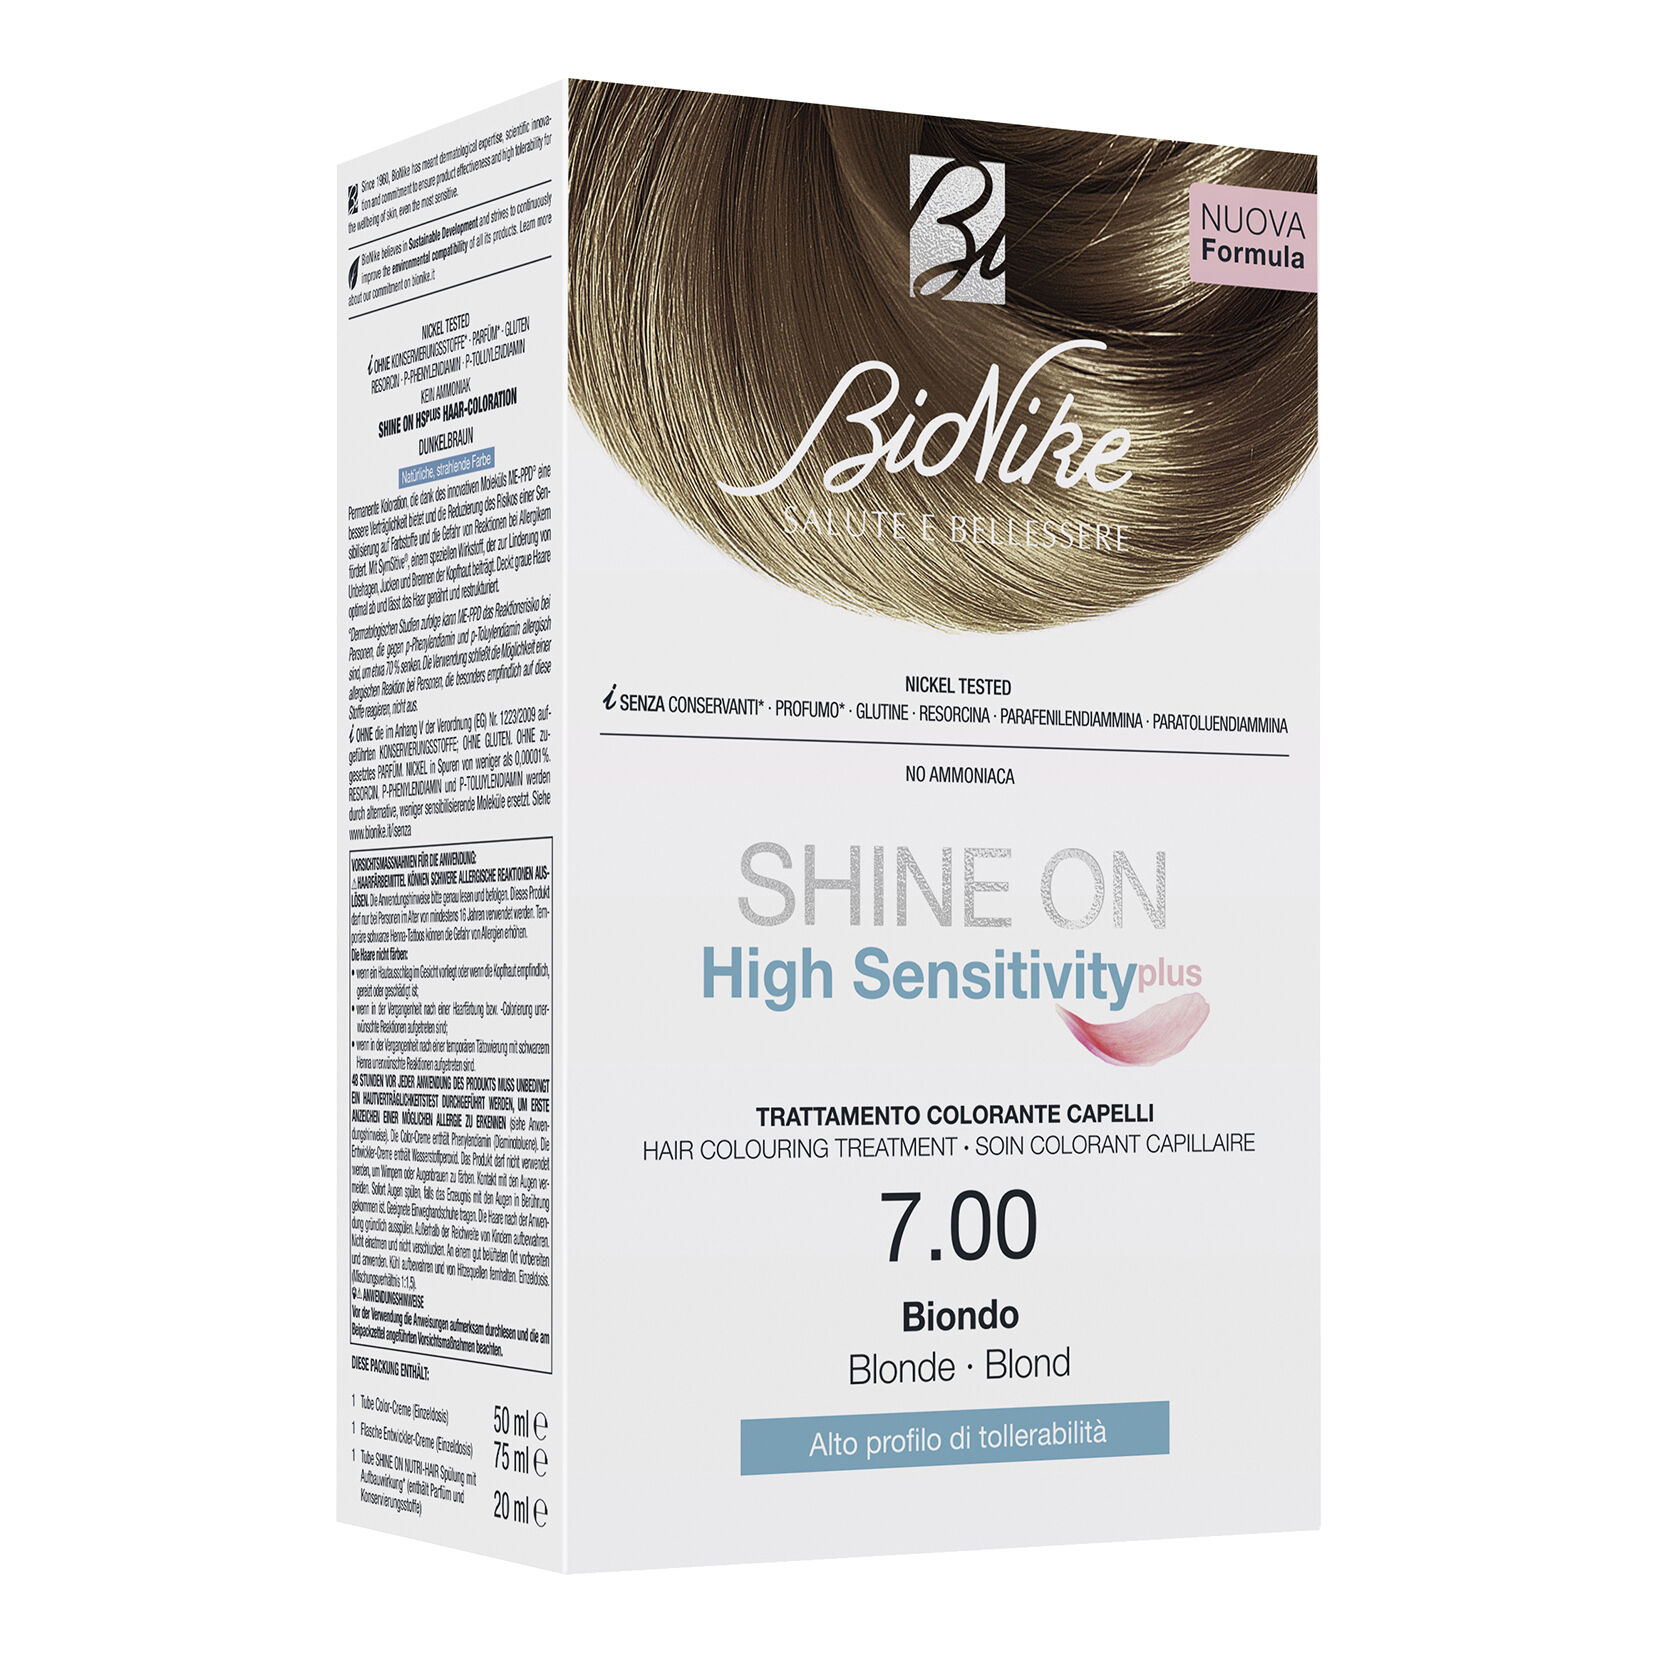 Bionike Shine on high sensitivity plus biondo 7,00 rivelatore in crema 75 ml + crema colorante 50 ml